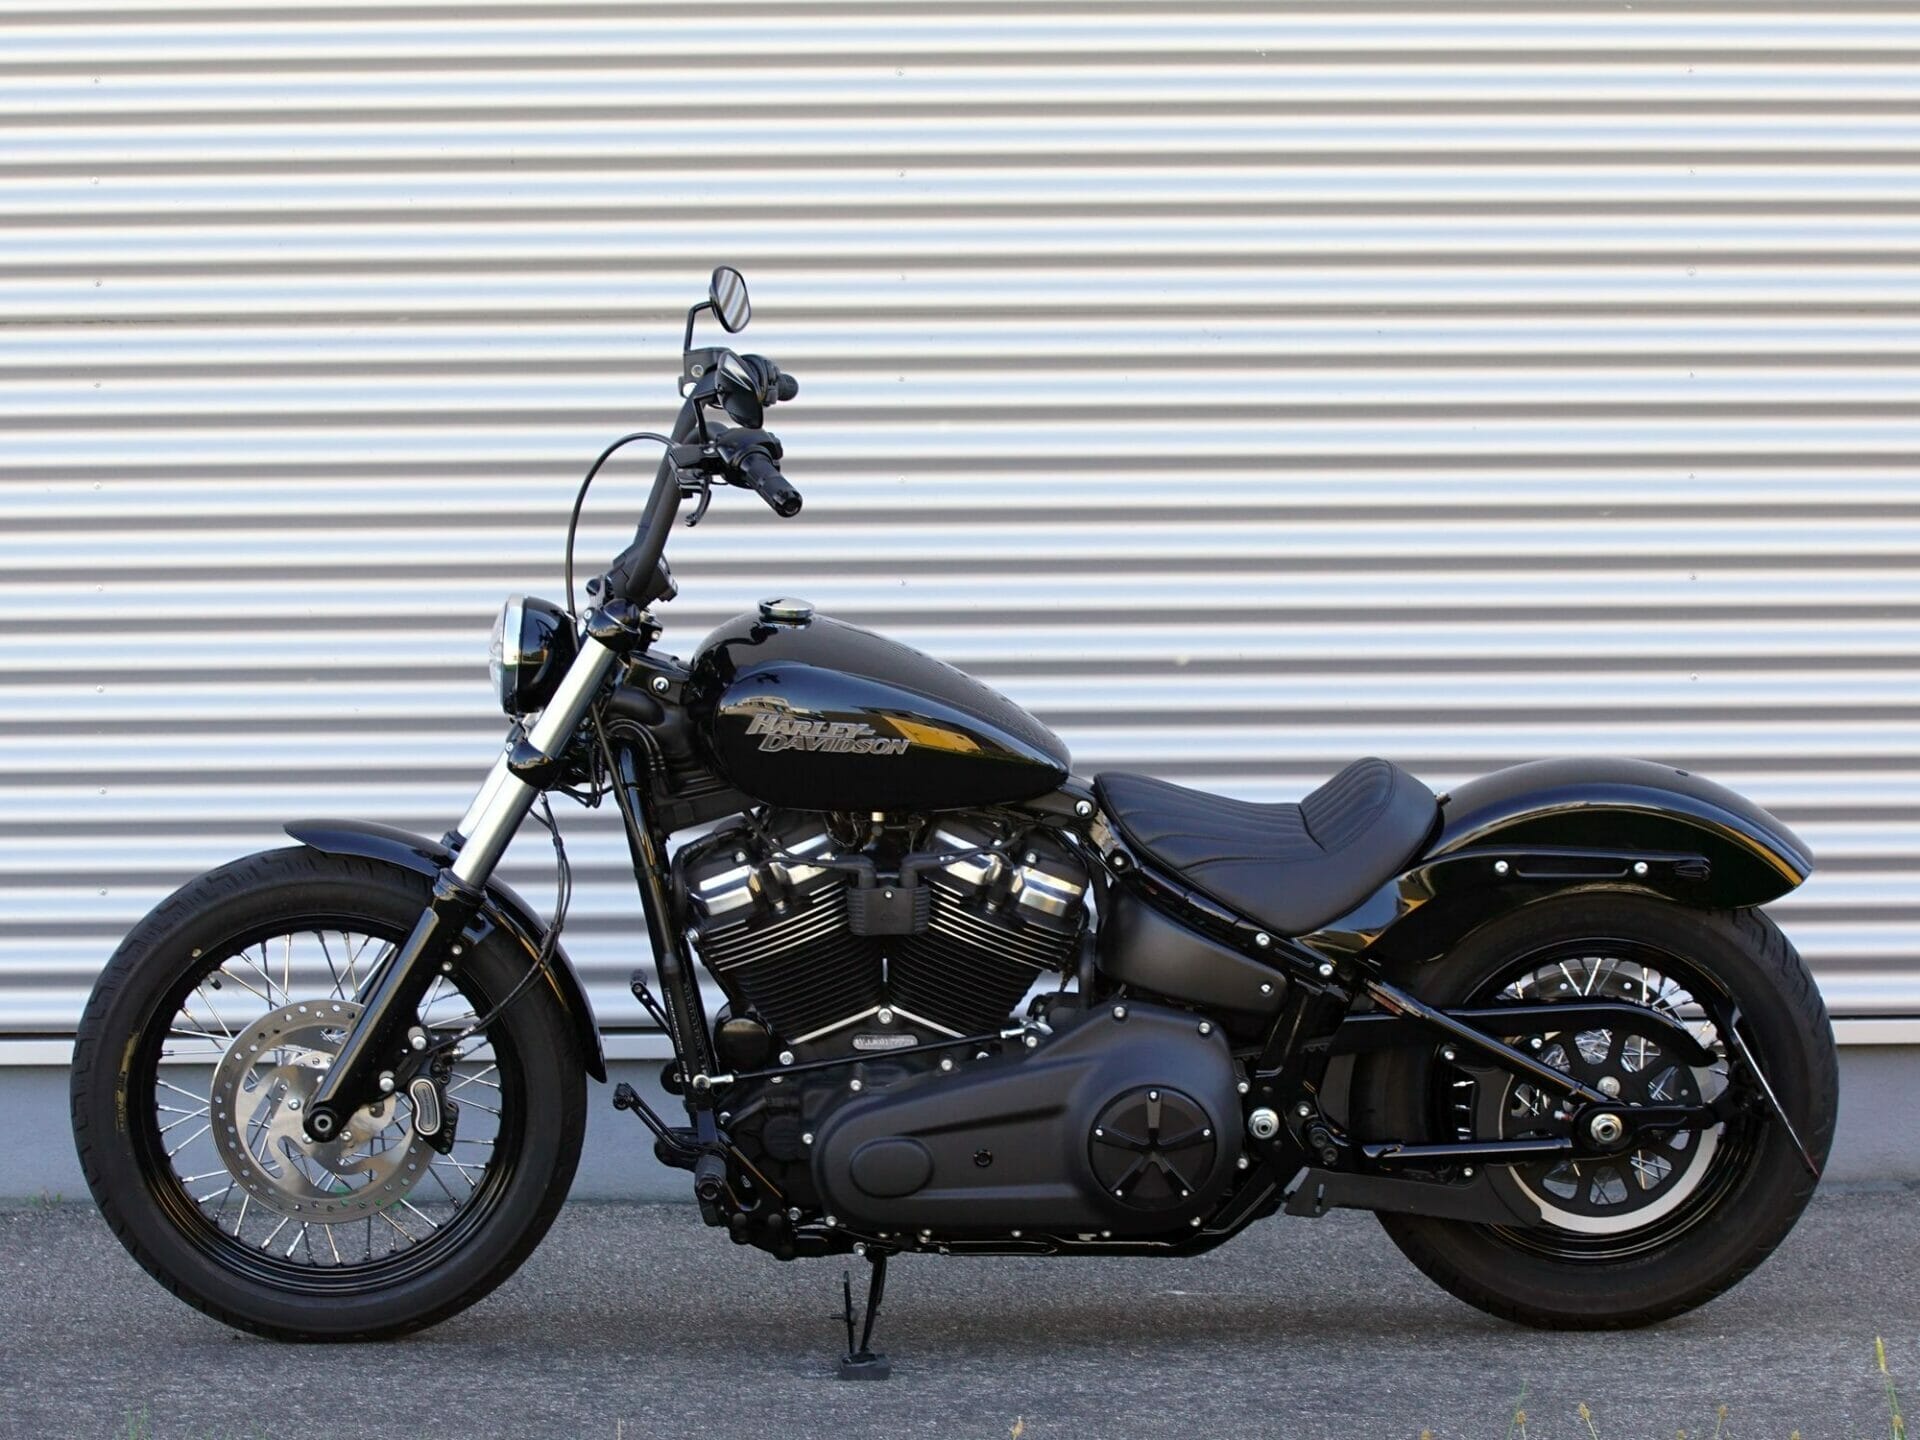 DSC01756 Motorrad Harley Street Bob 300dpi